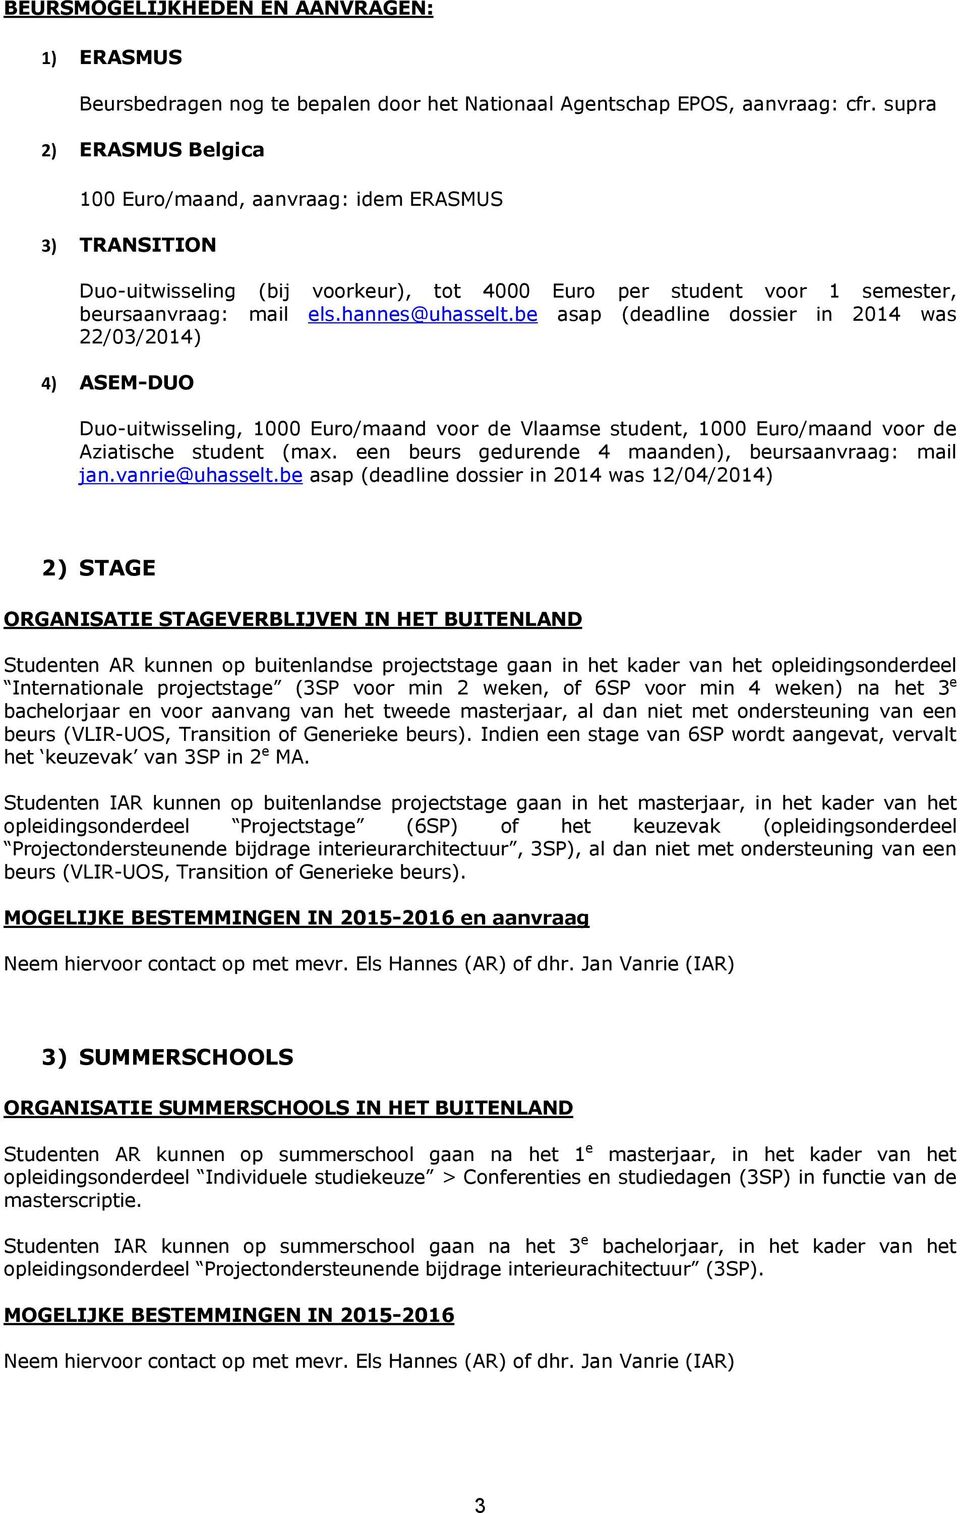 be asap (deadline dossier in 2014 was 22/03/2014) 4) ASEM-DUO Duo-uitwisseling, 1000 Euro/maand voor de Vlaamse student, 1000 Euro/maand voor de Aziatische student (max.